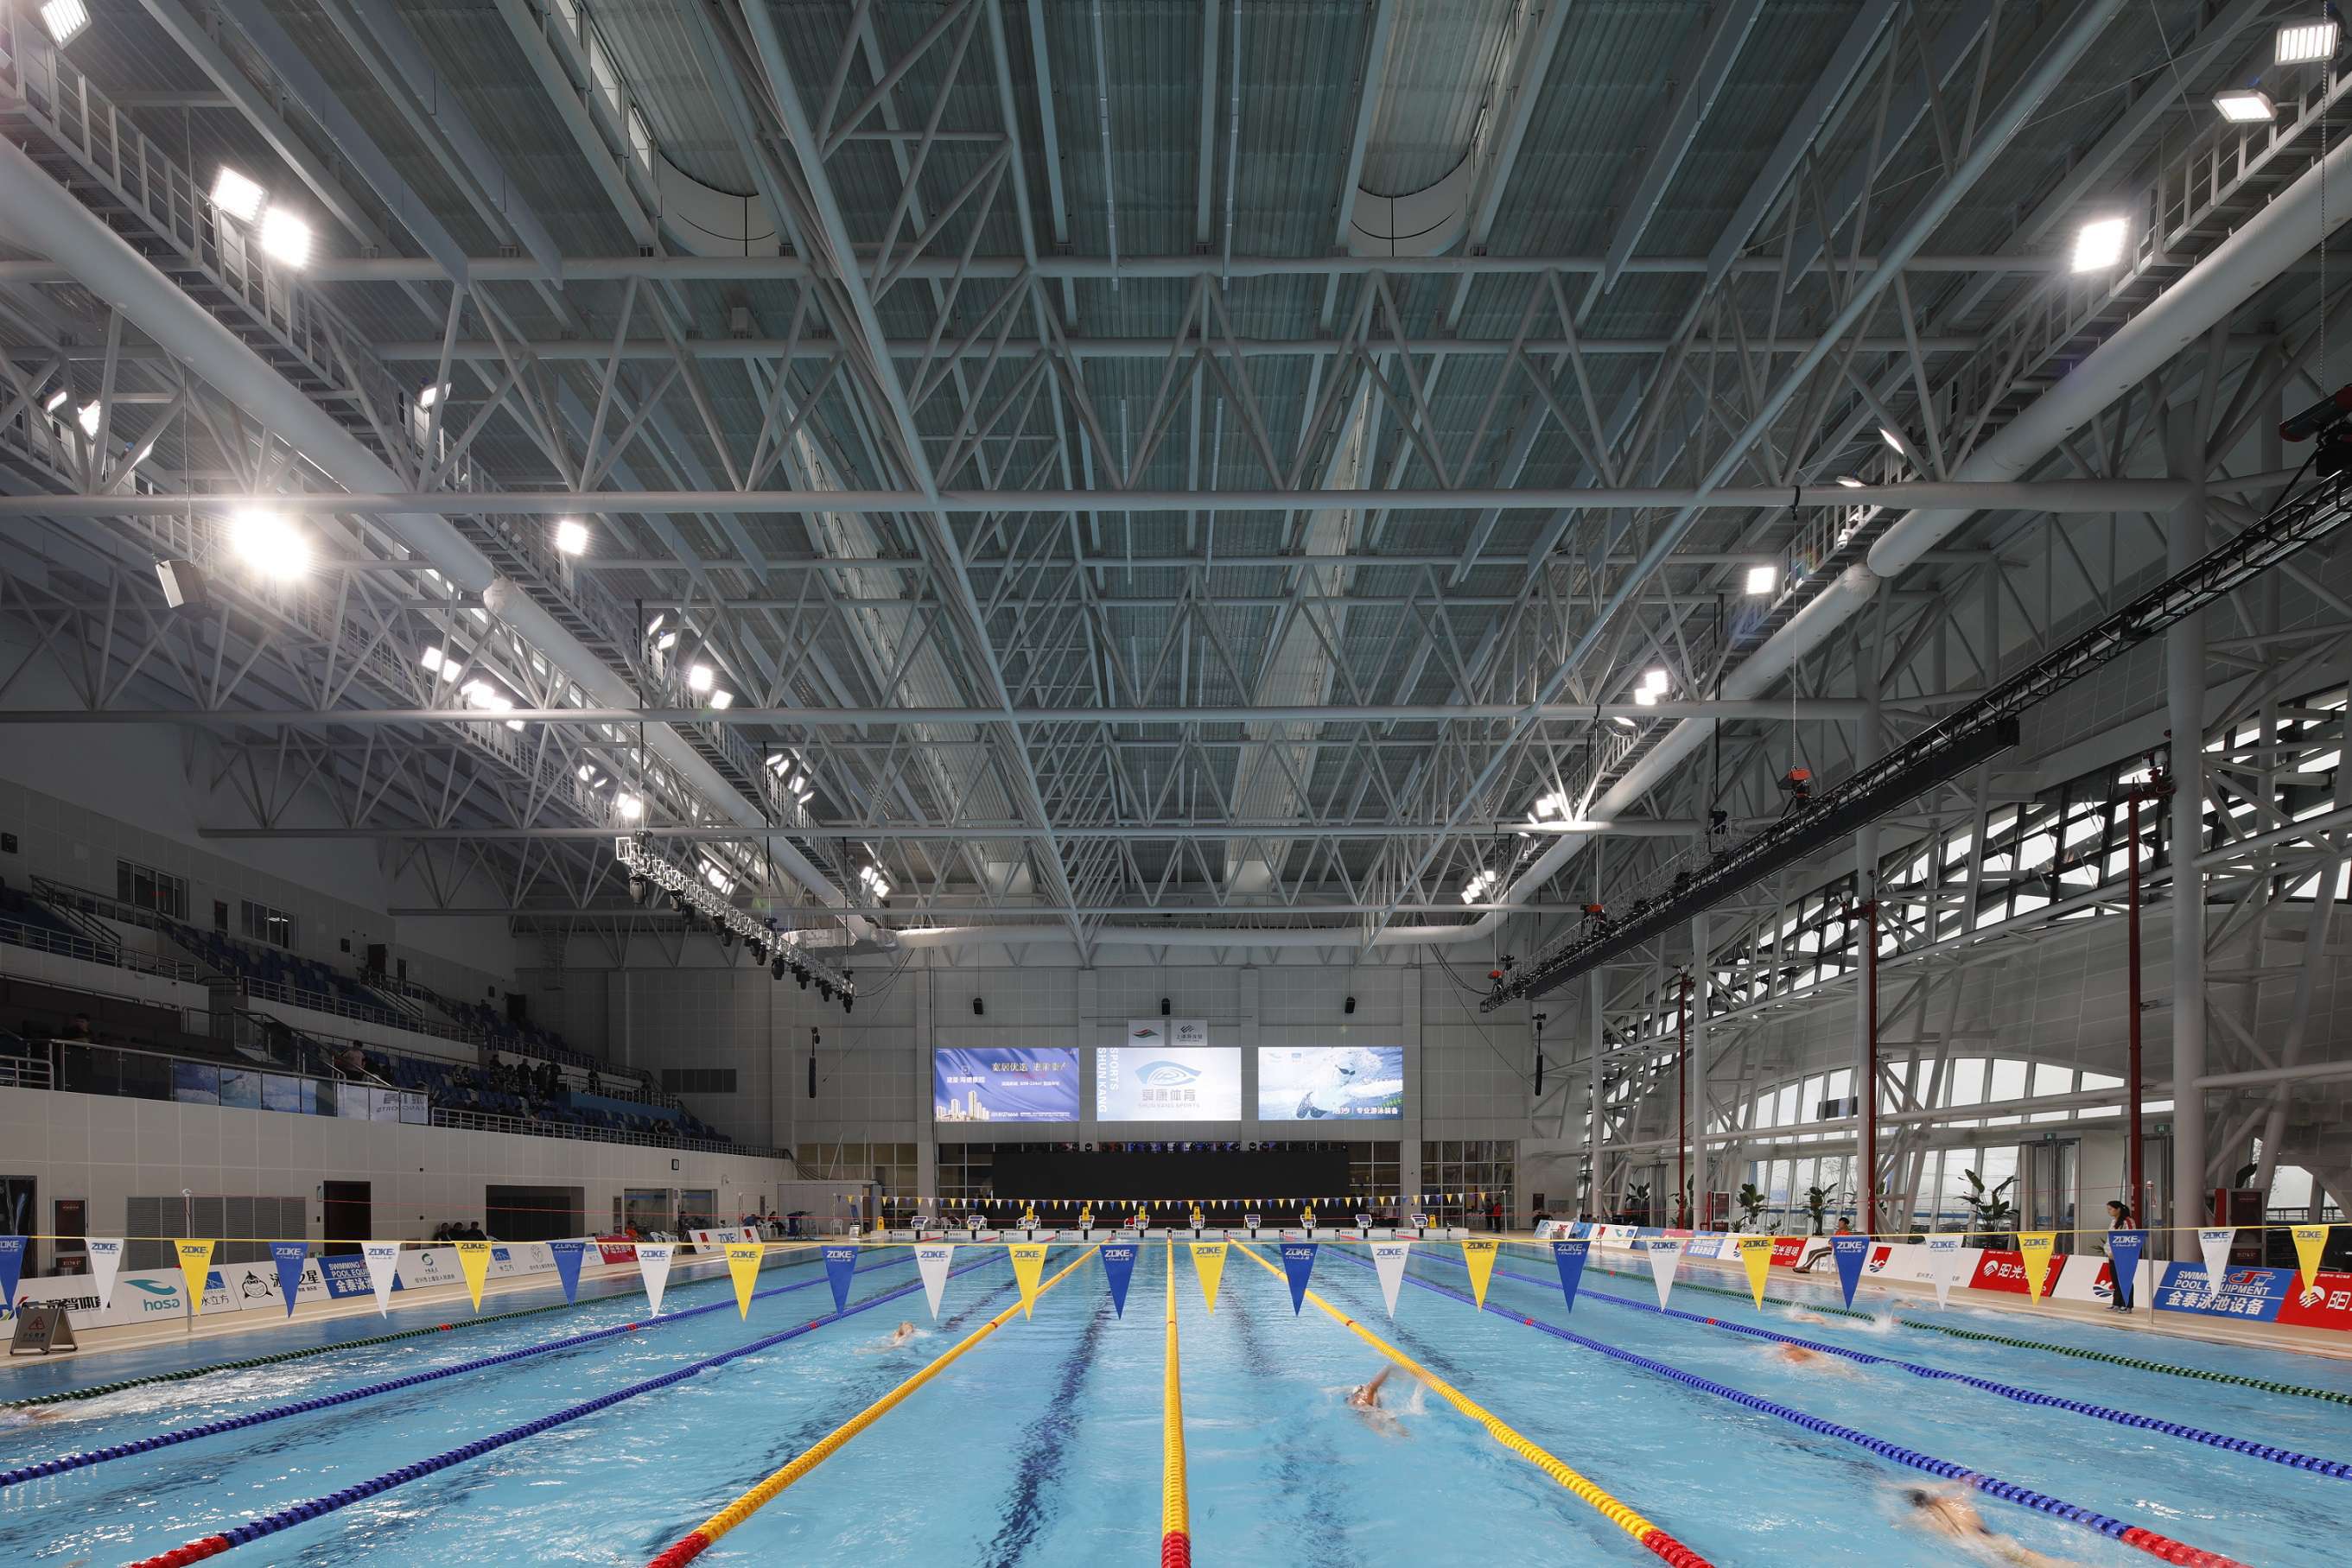 工程共分两期,近期完成的第一期工程包括体育馆与游泳馆